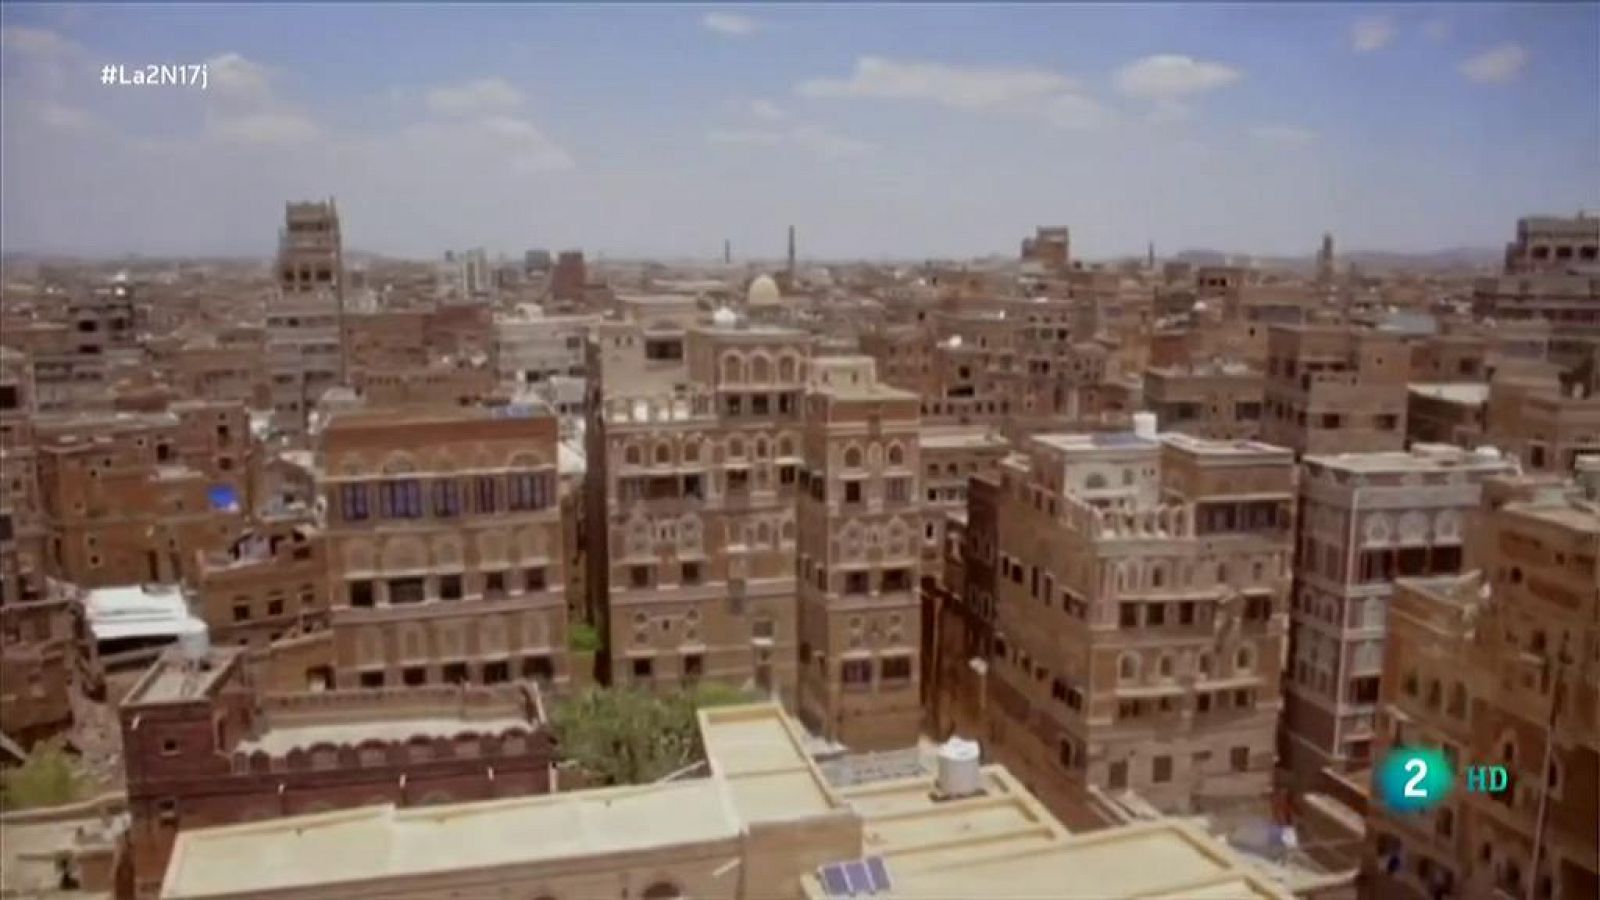 La ciudad de Shibam en Yemen asediada por la guerra